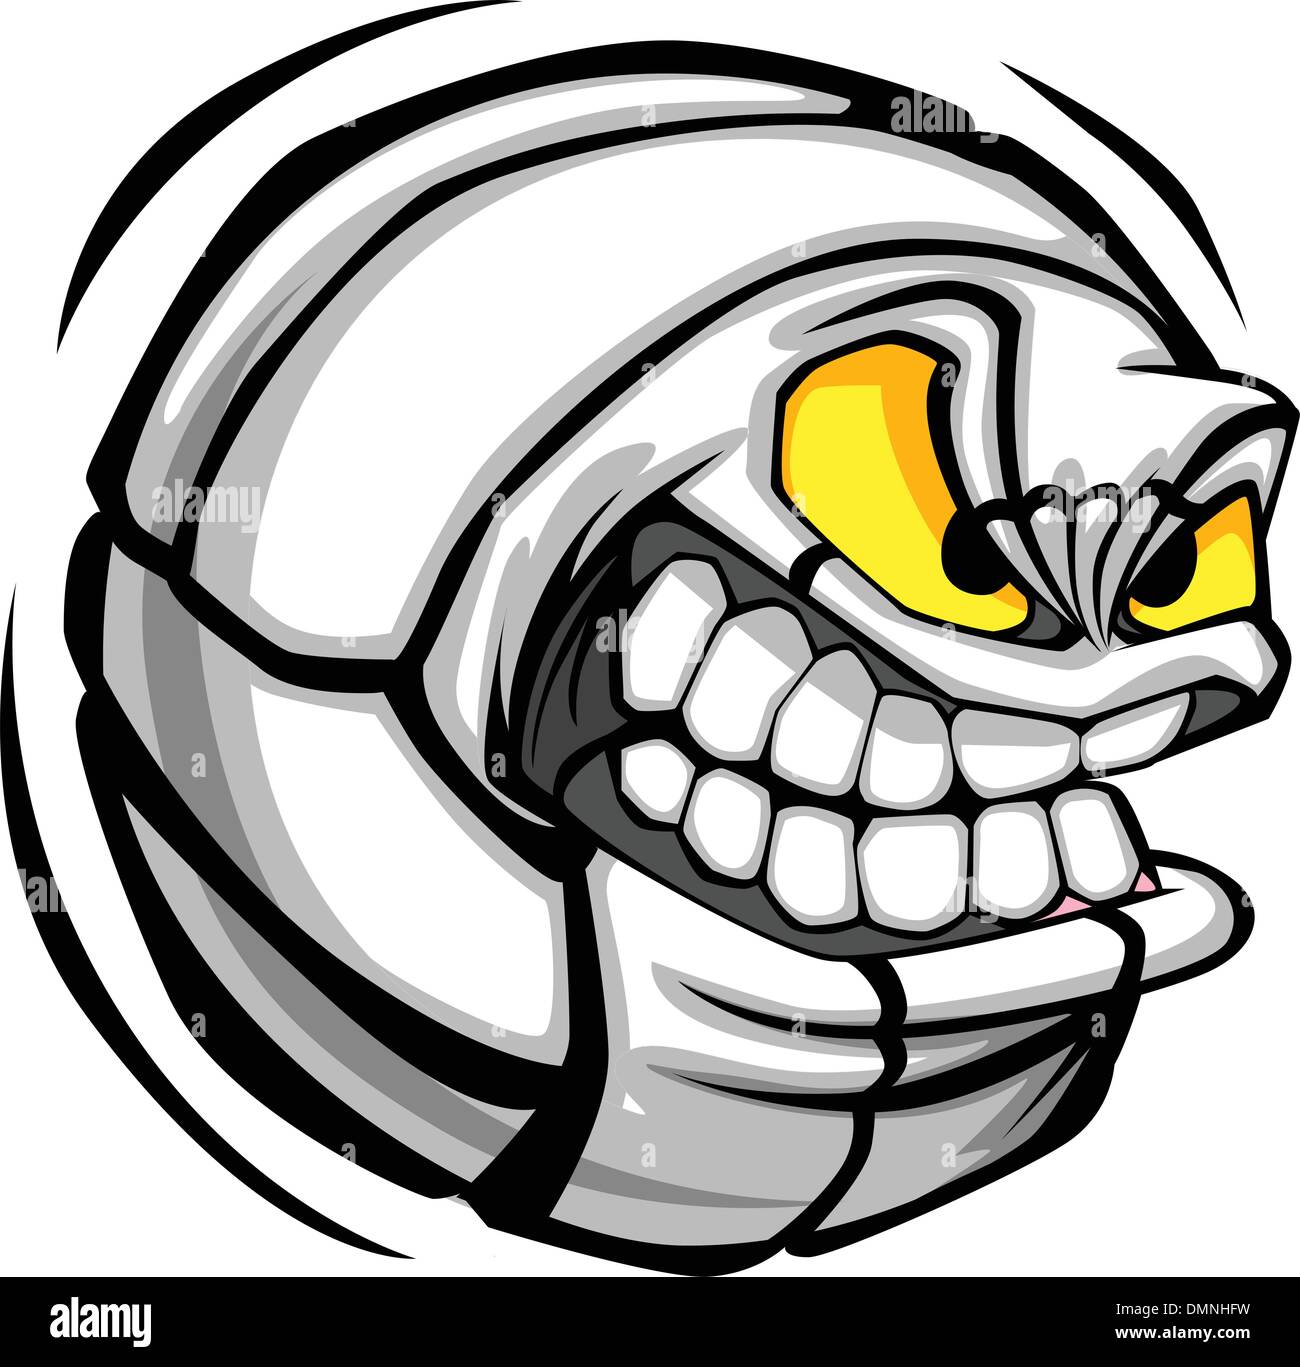 Volleyball Ball Face Cartoon Vector Image Stock Vector